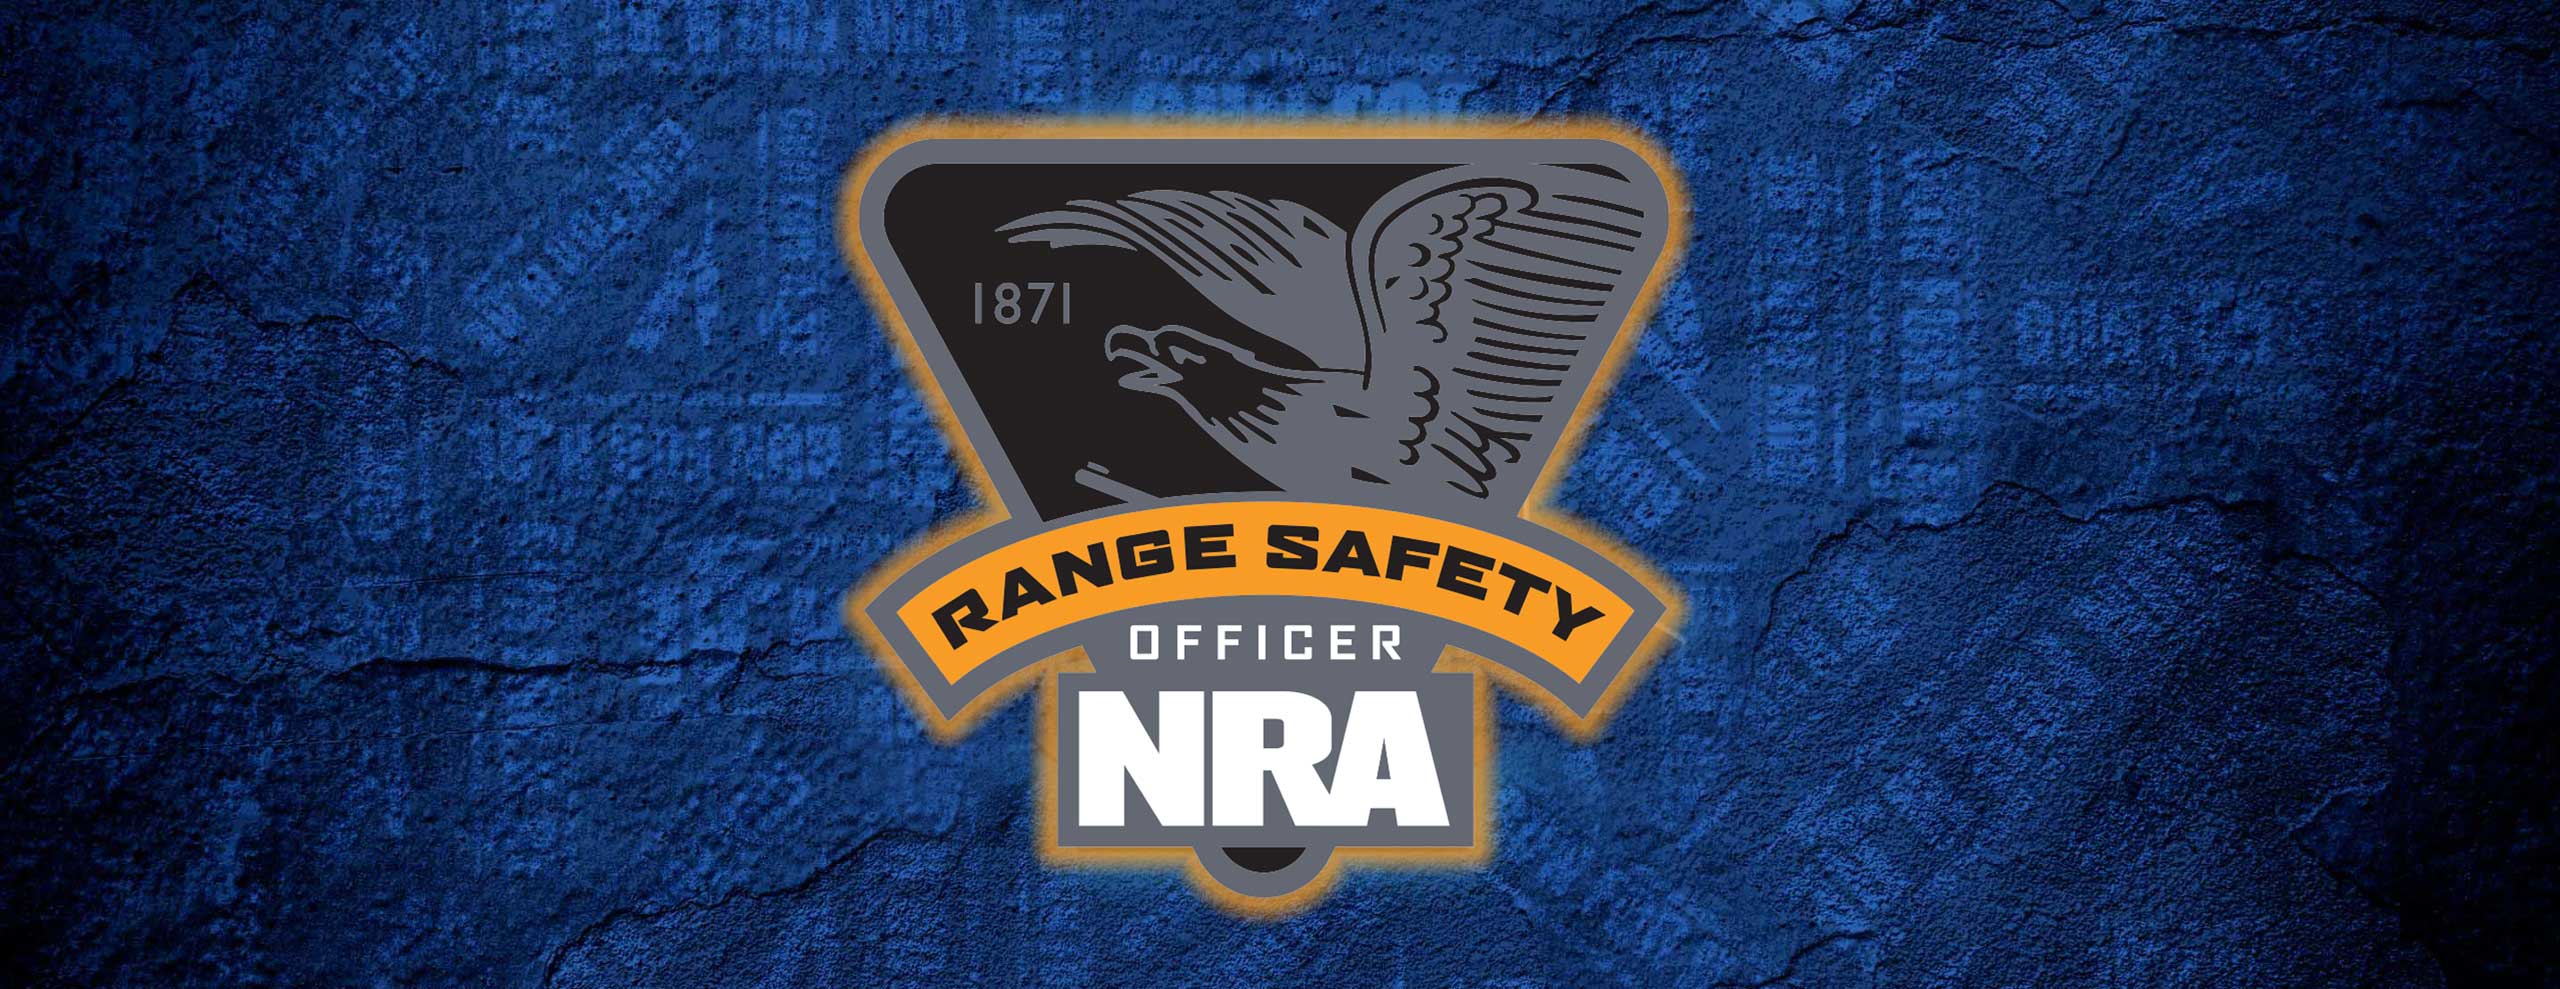 NRA Range Safety Officer - NRA Range Safety Officer